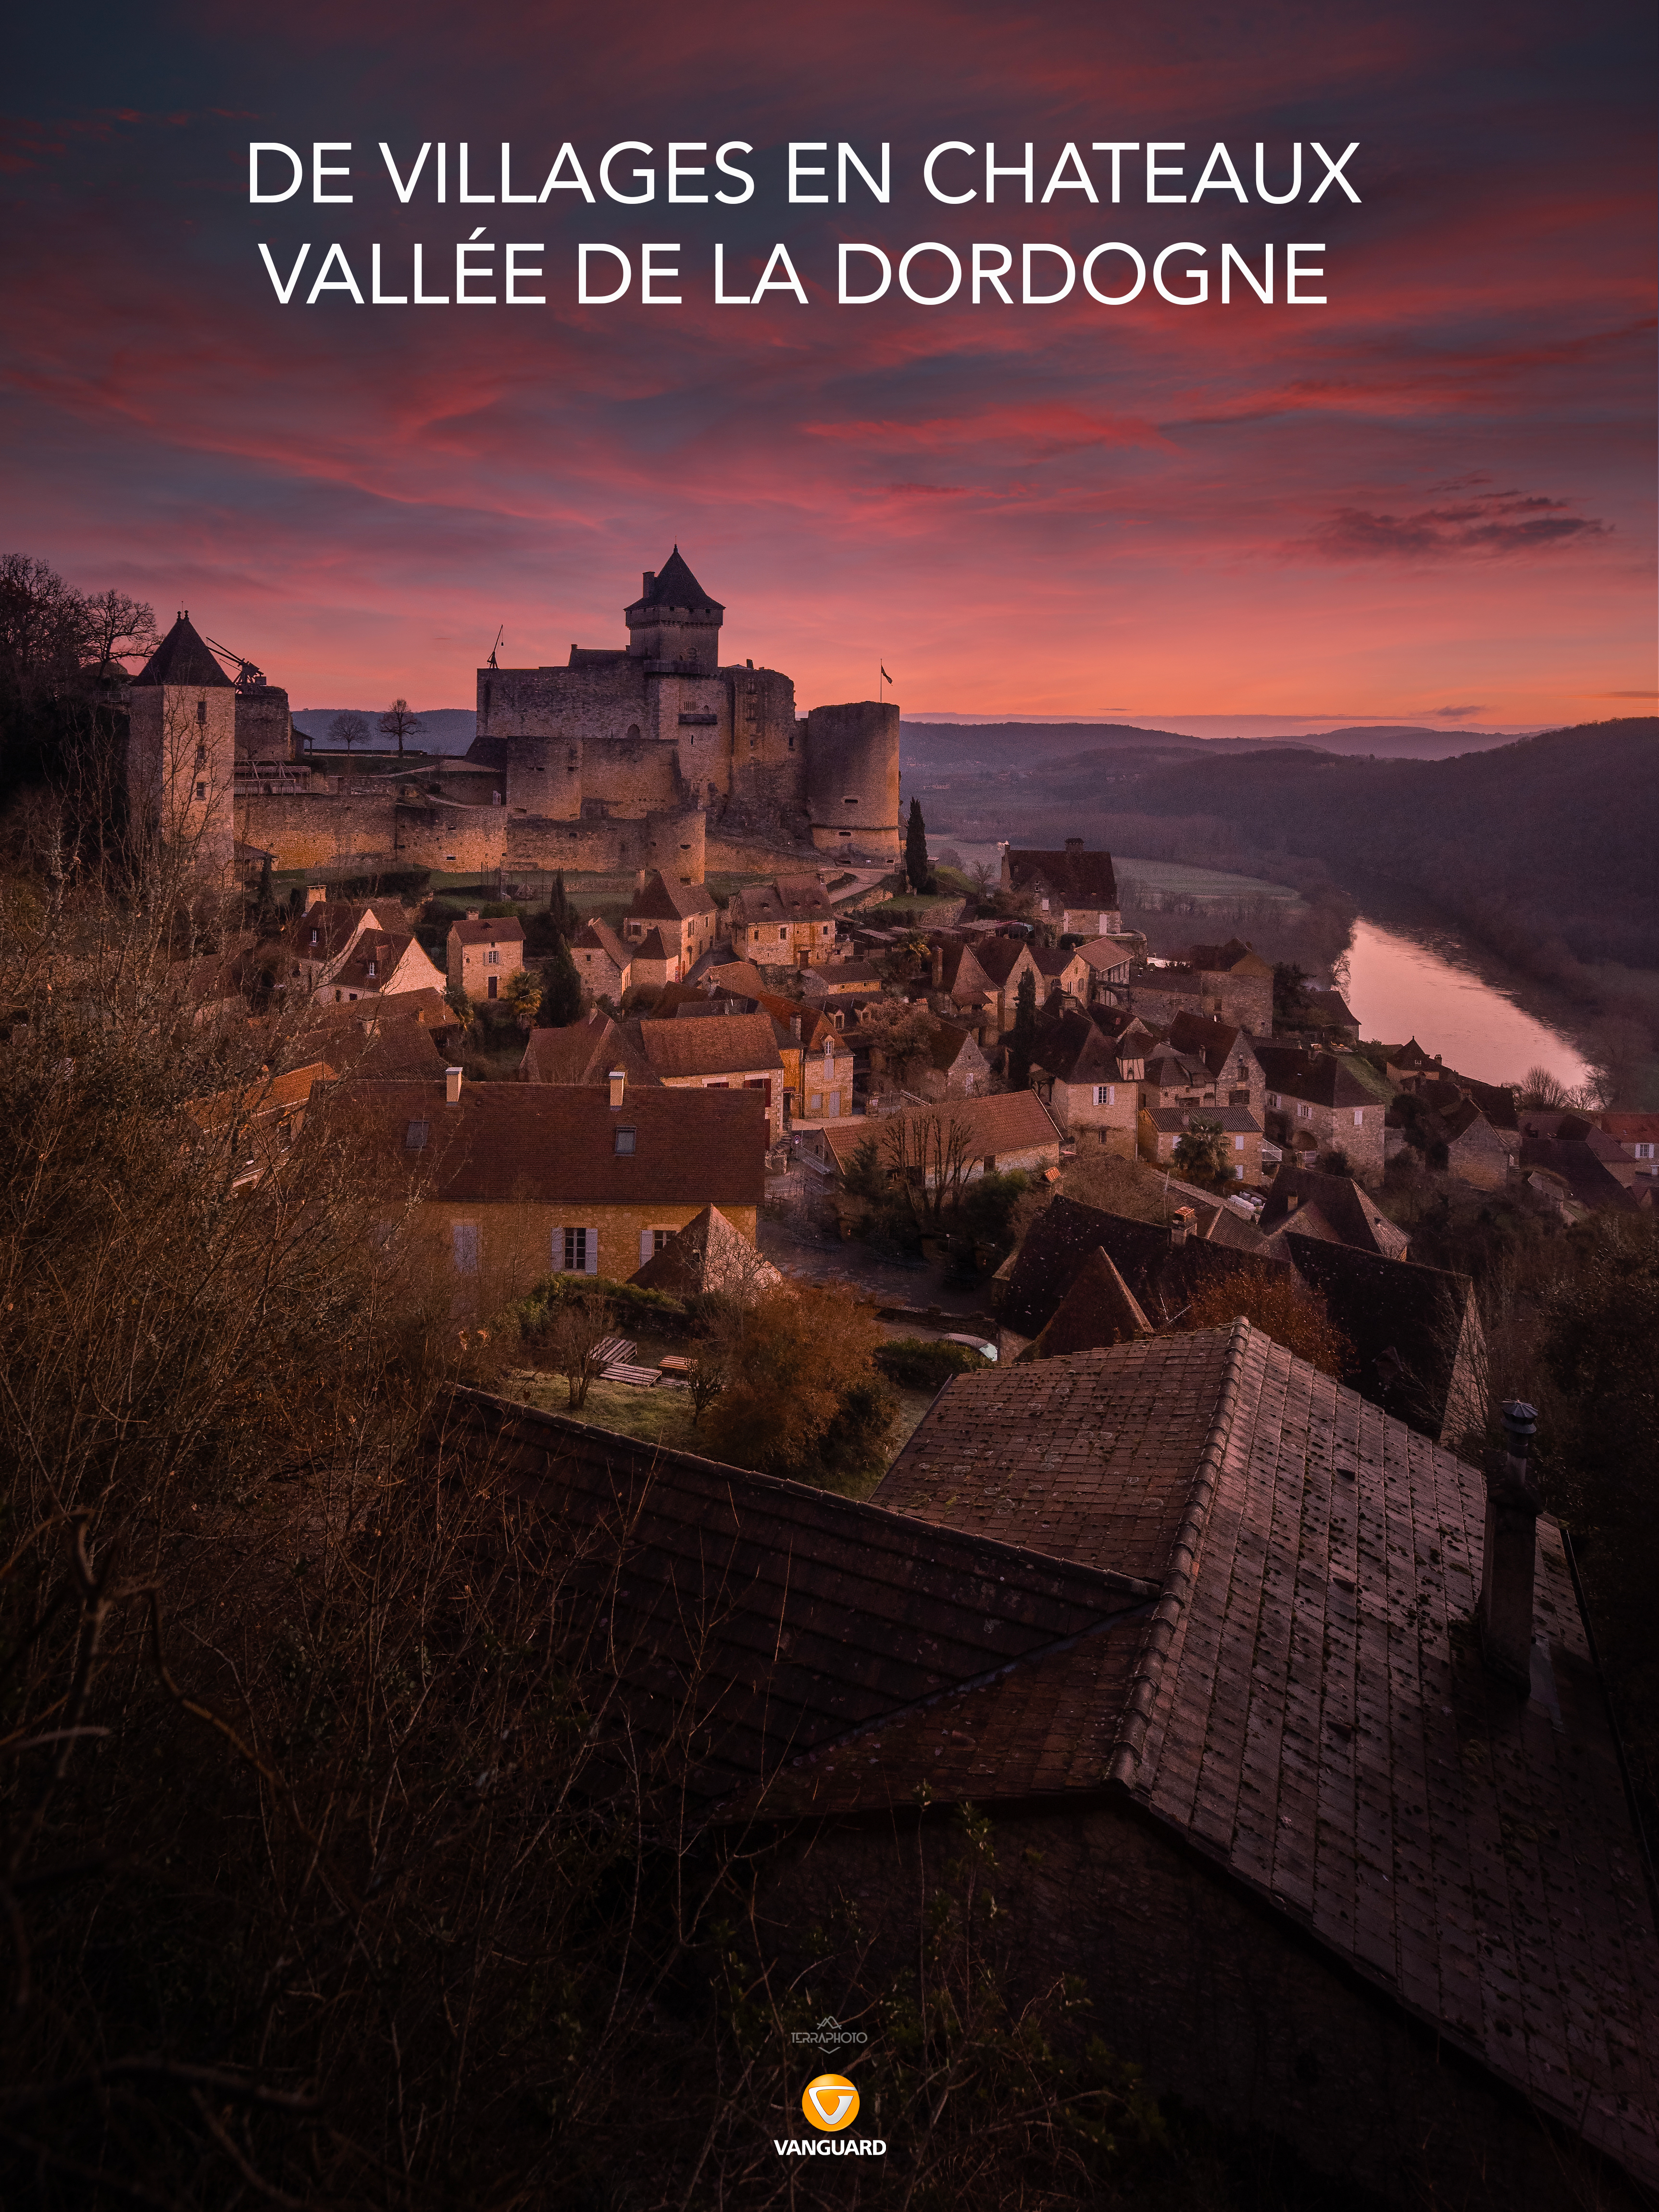 Vallée de la Dordogne stages et voyages photo ©terra photo